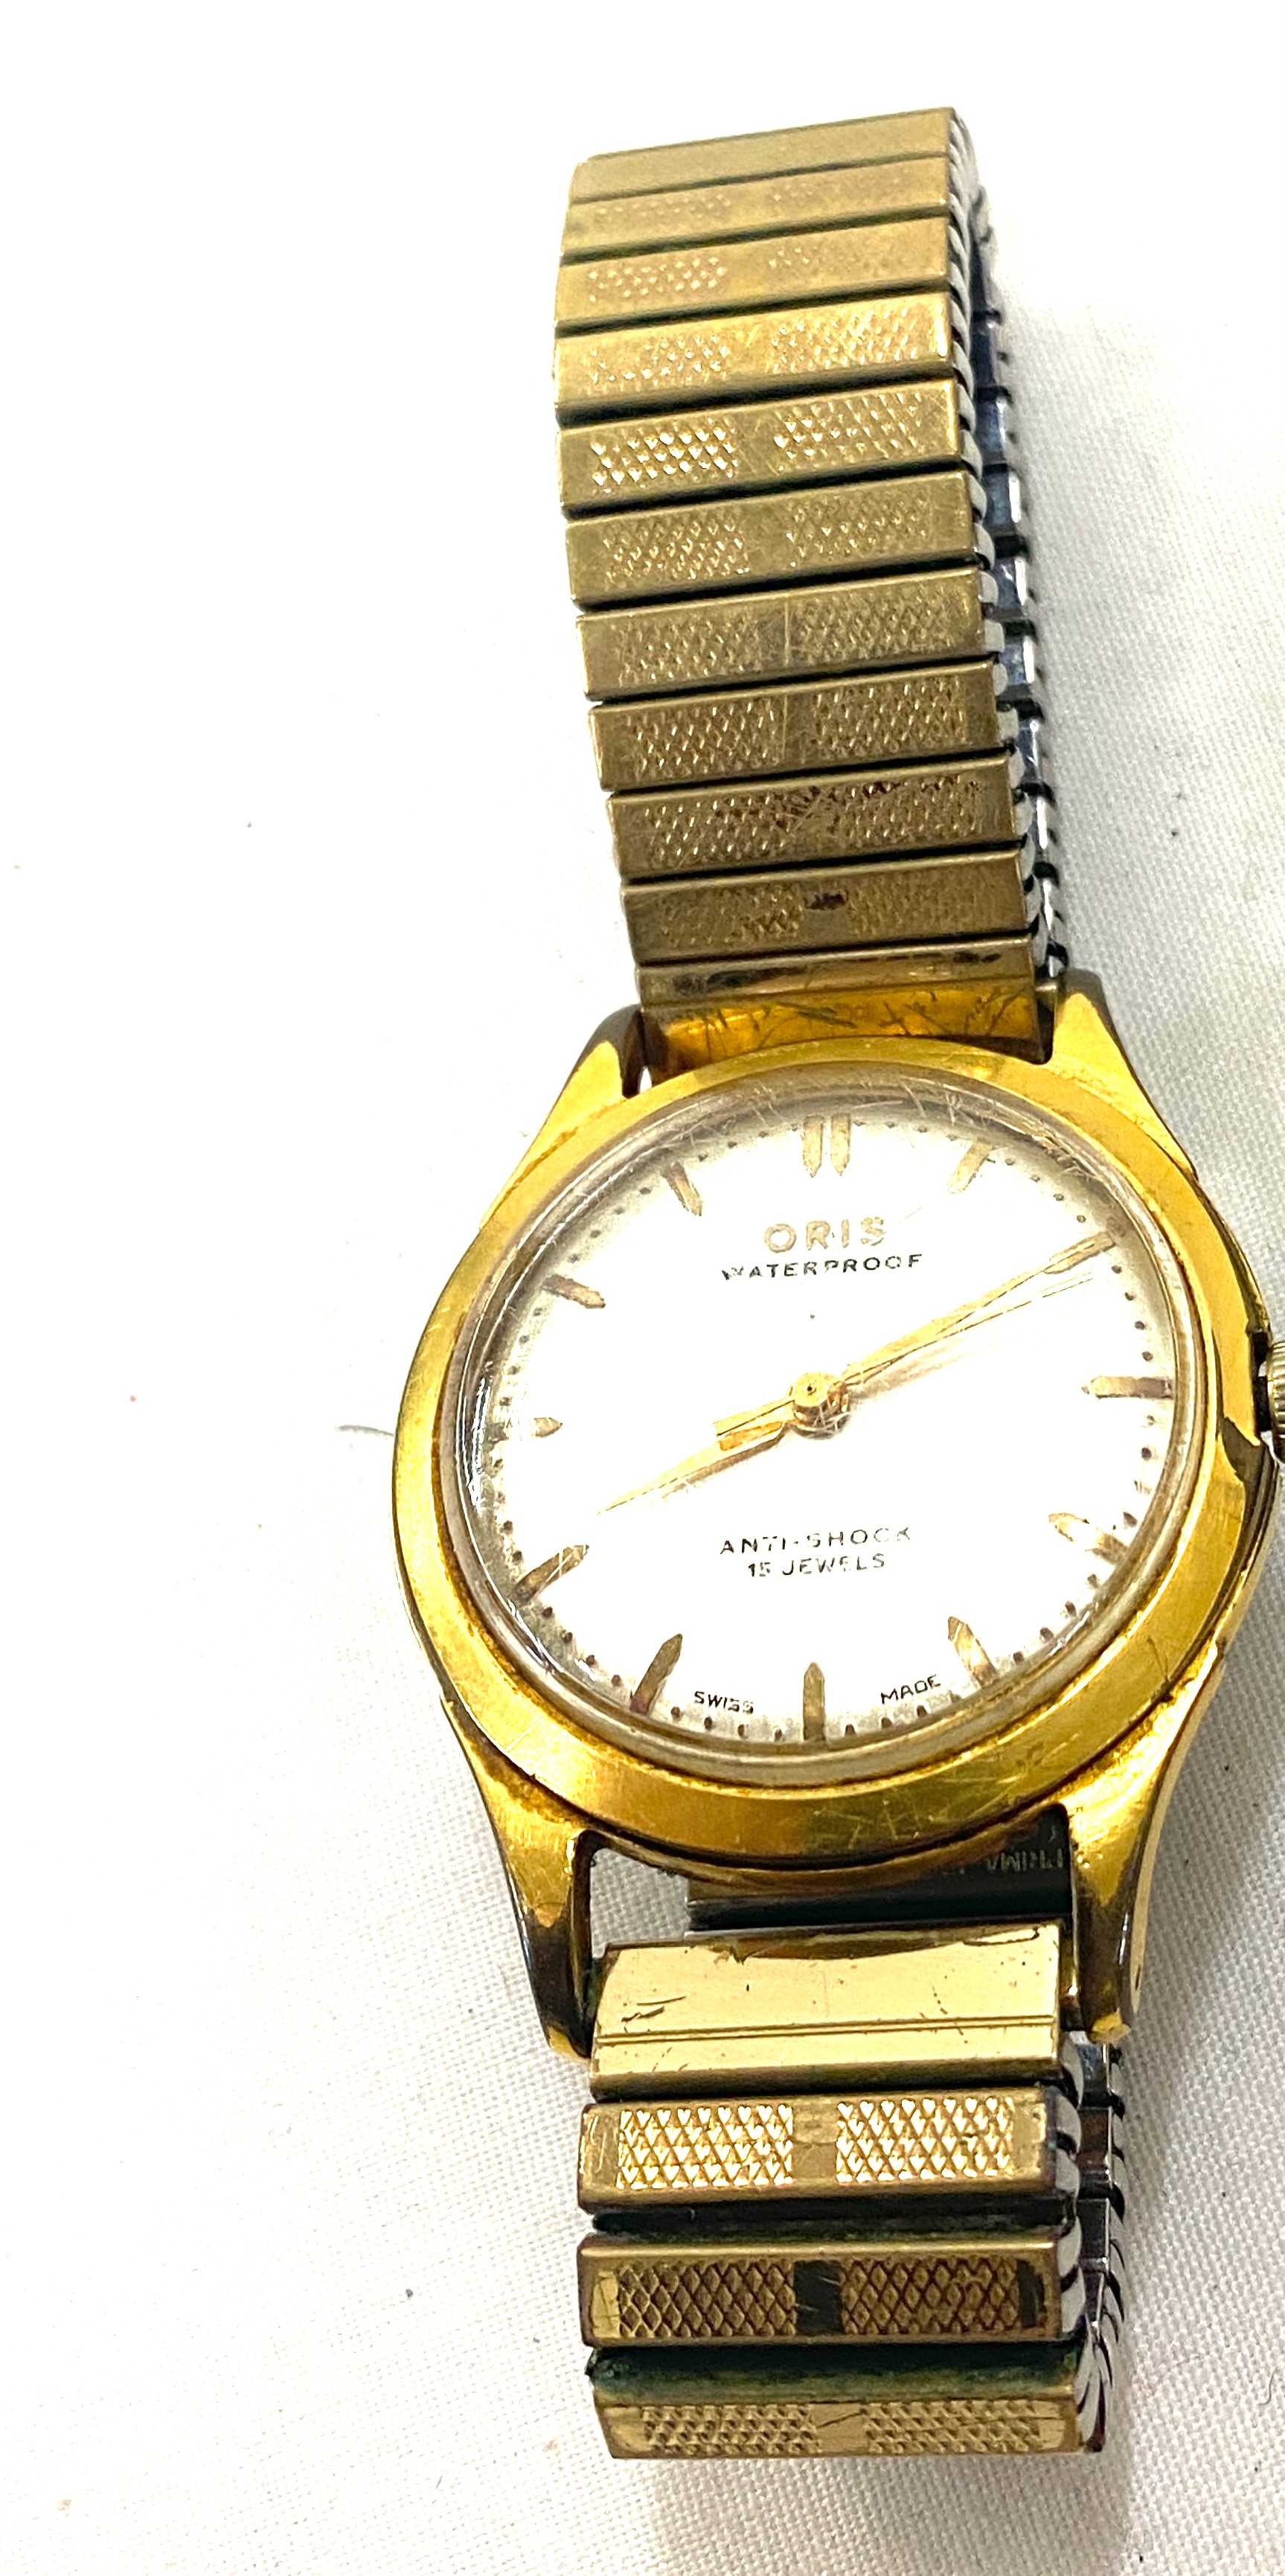 Gents Oris waterproof, anti shock 15 jewel wristwatch, ticks, no warranty given - Image 3 of 5